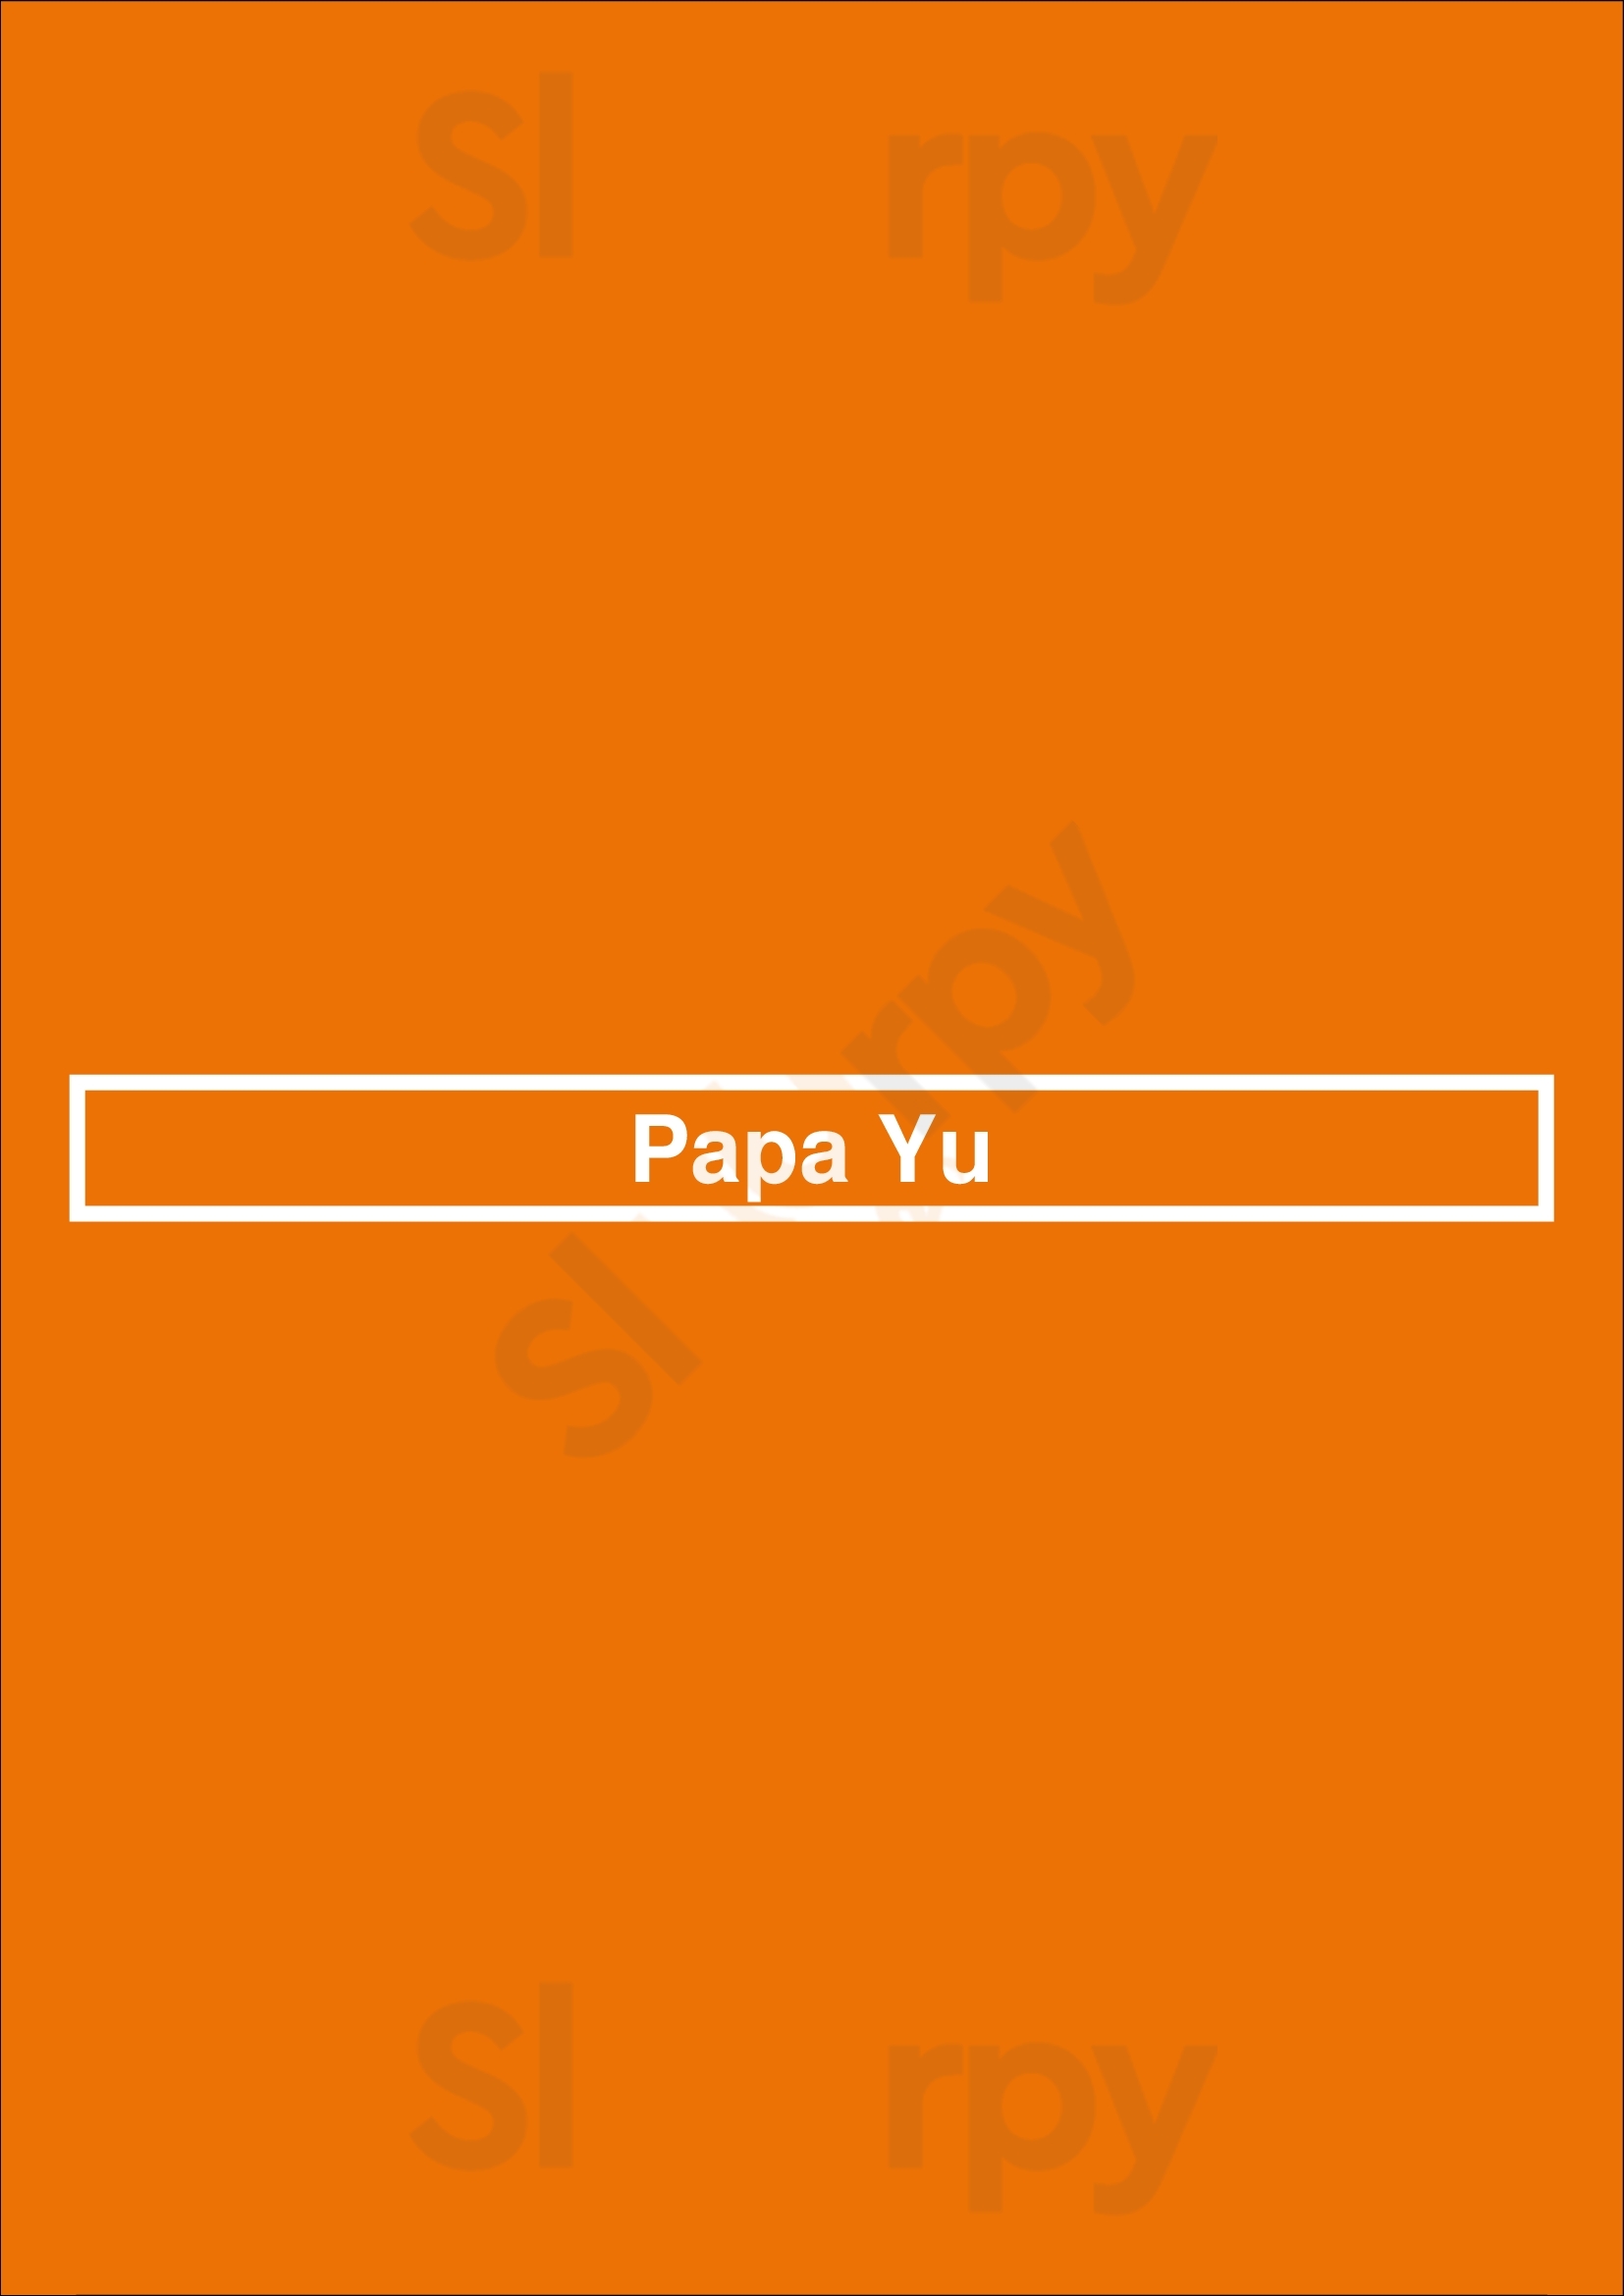 Papa Yu Houston Menu - 1